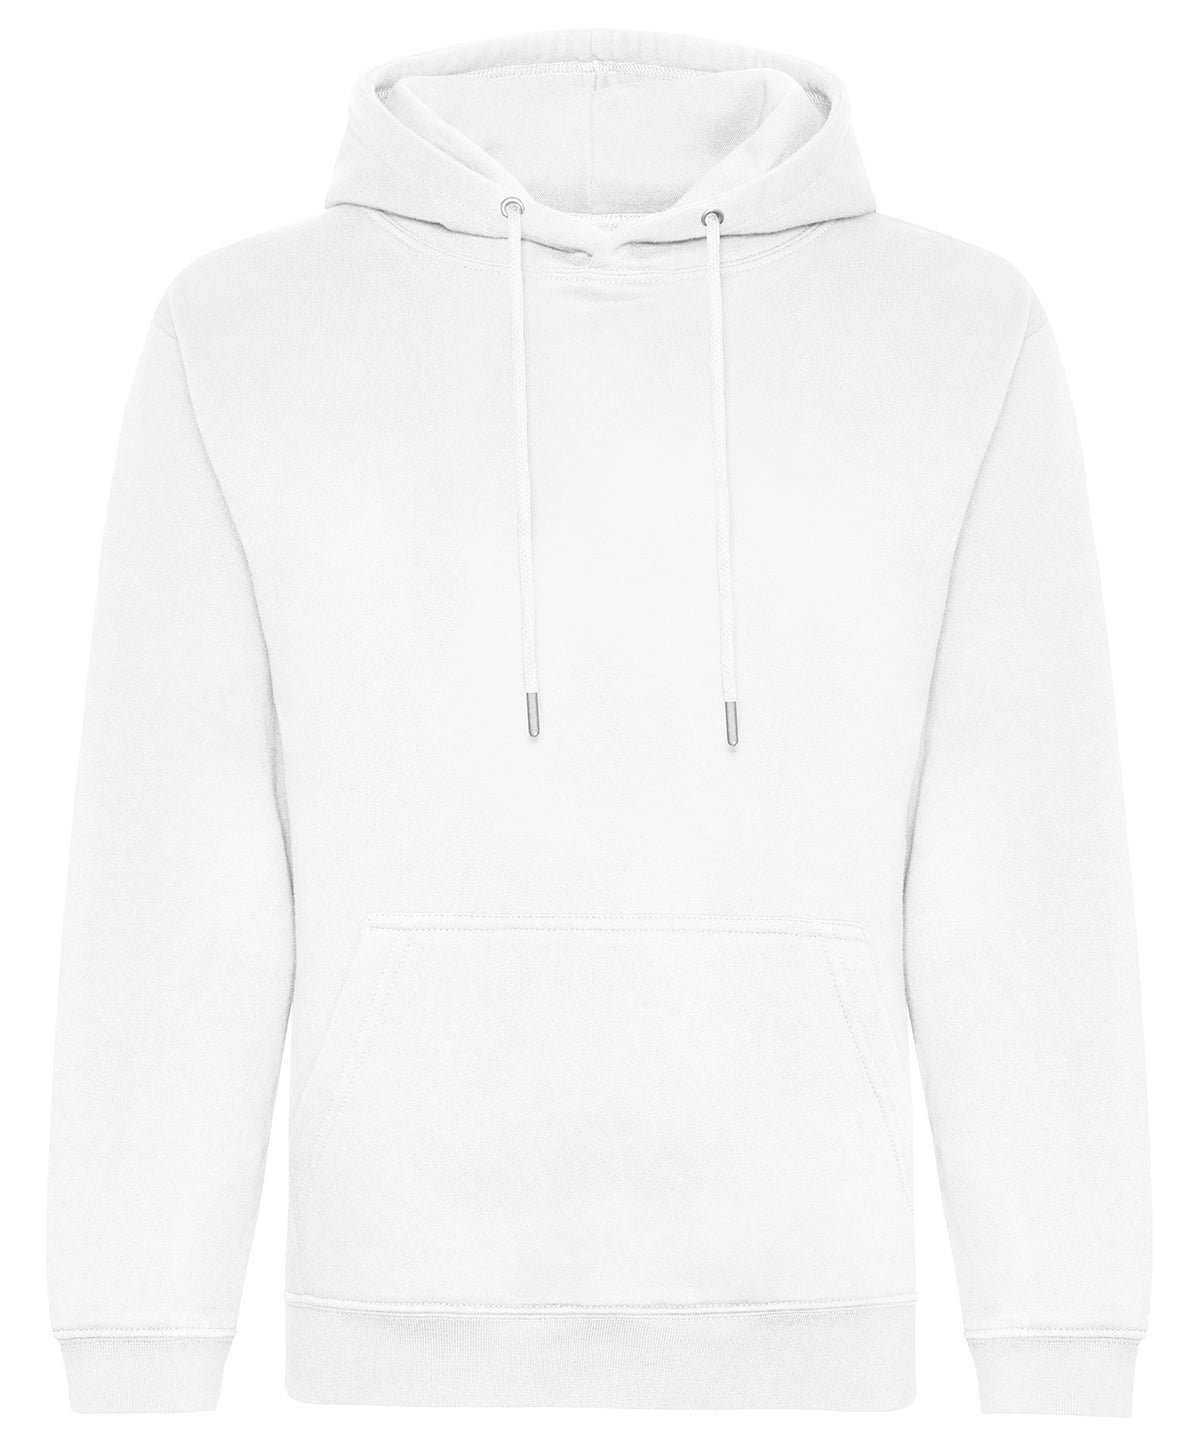 Personalised Hoodies - White AWDis Just Hoods Organic hoodie